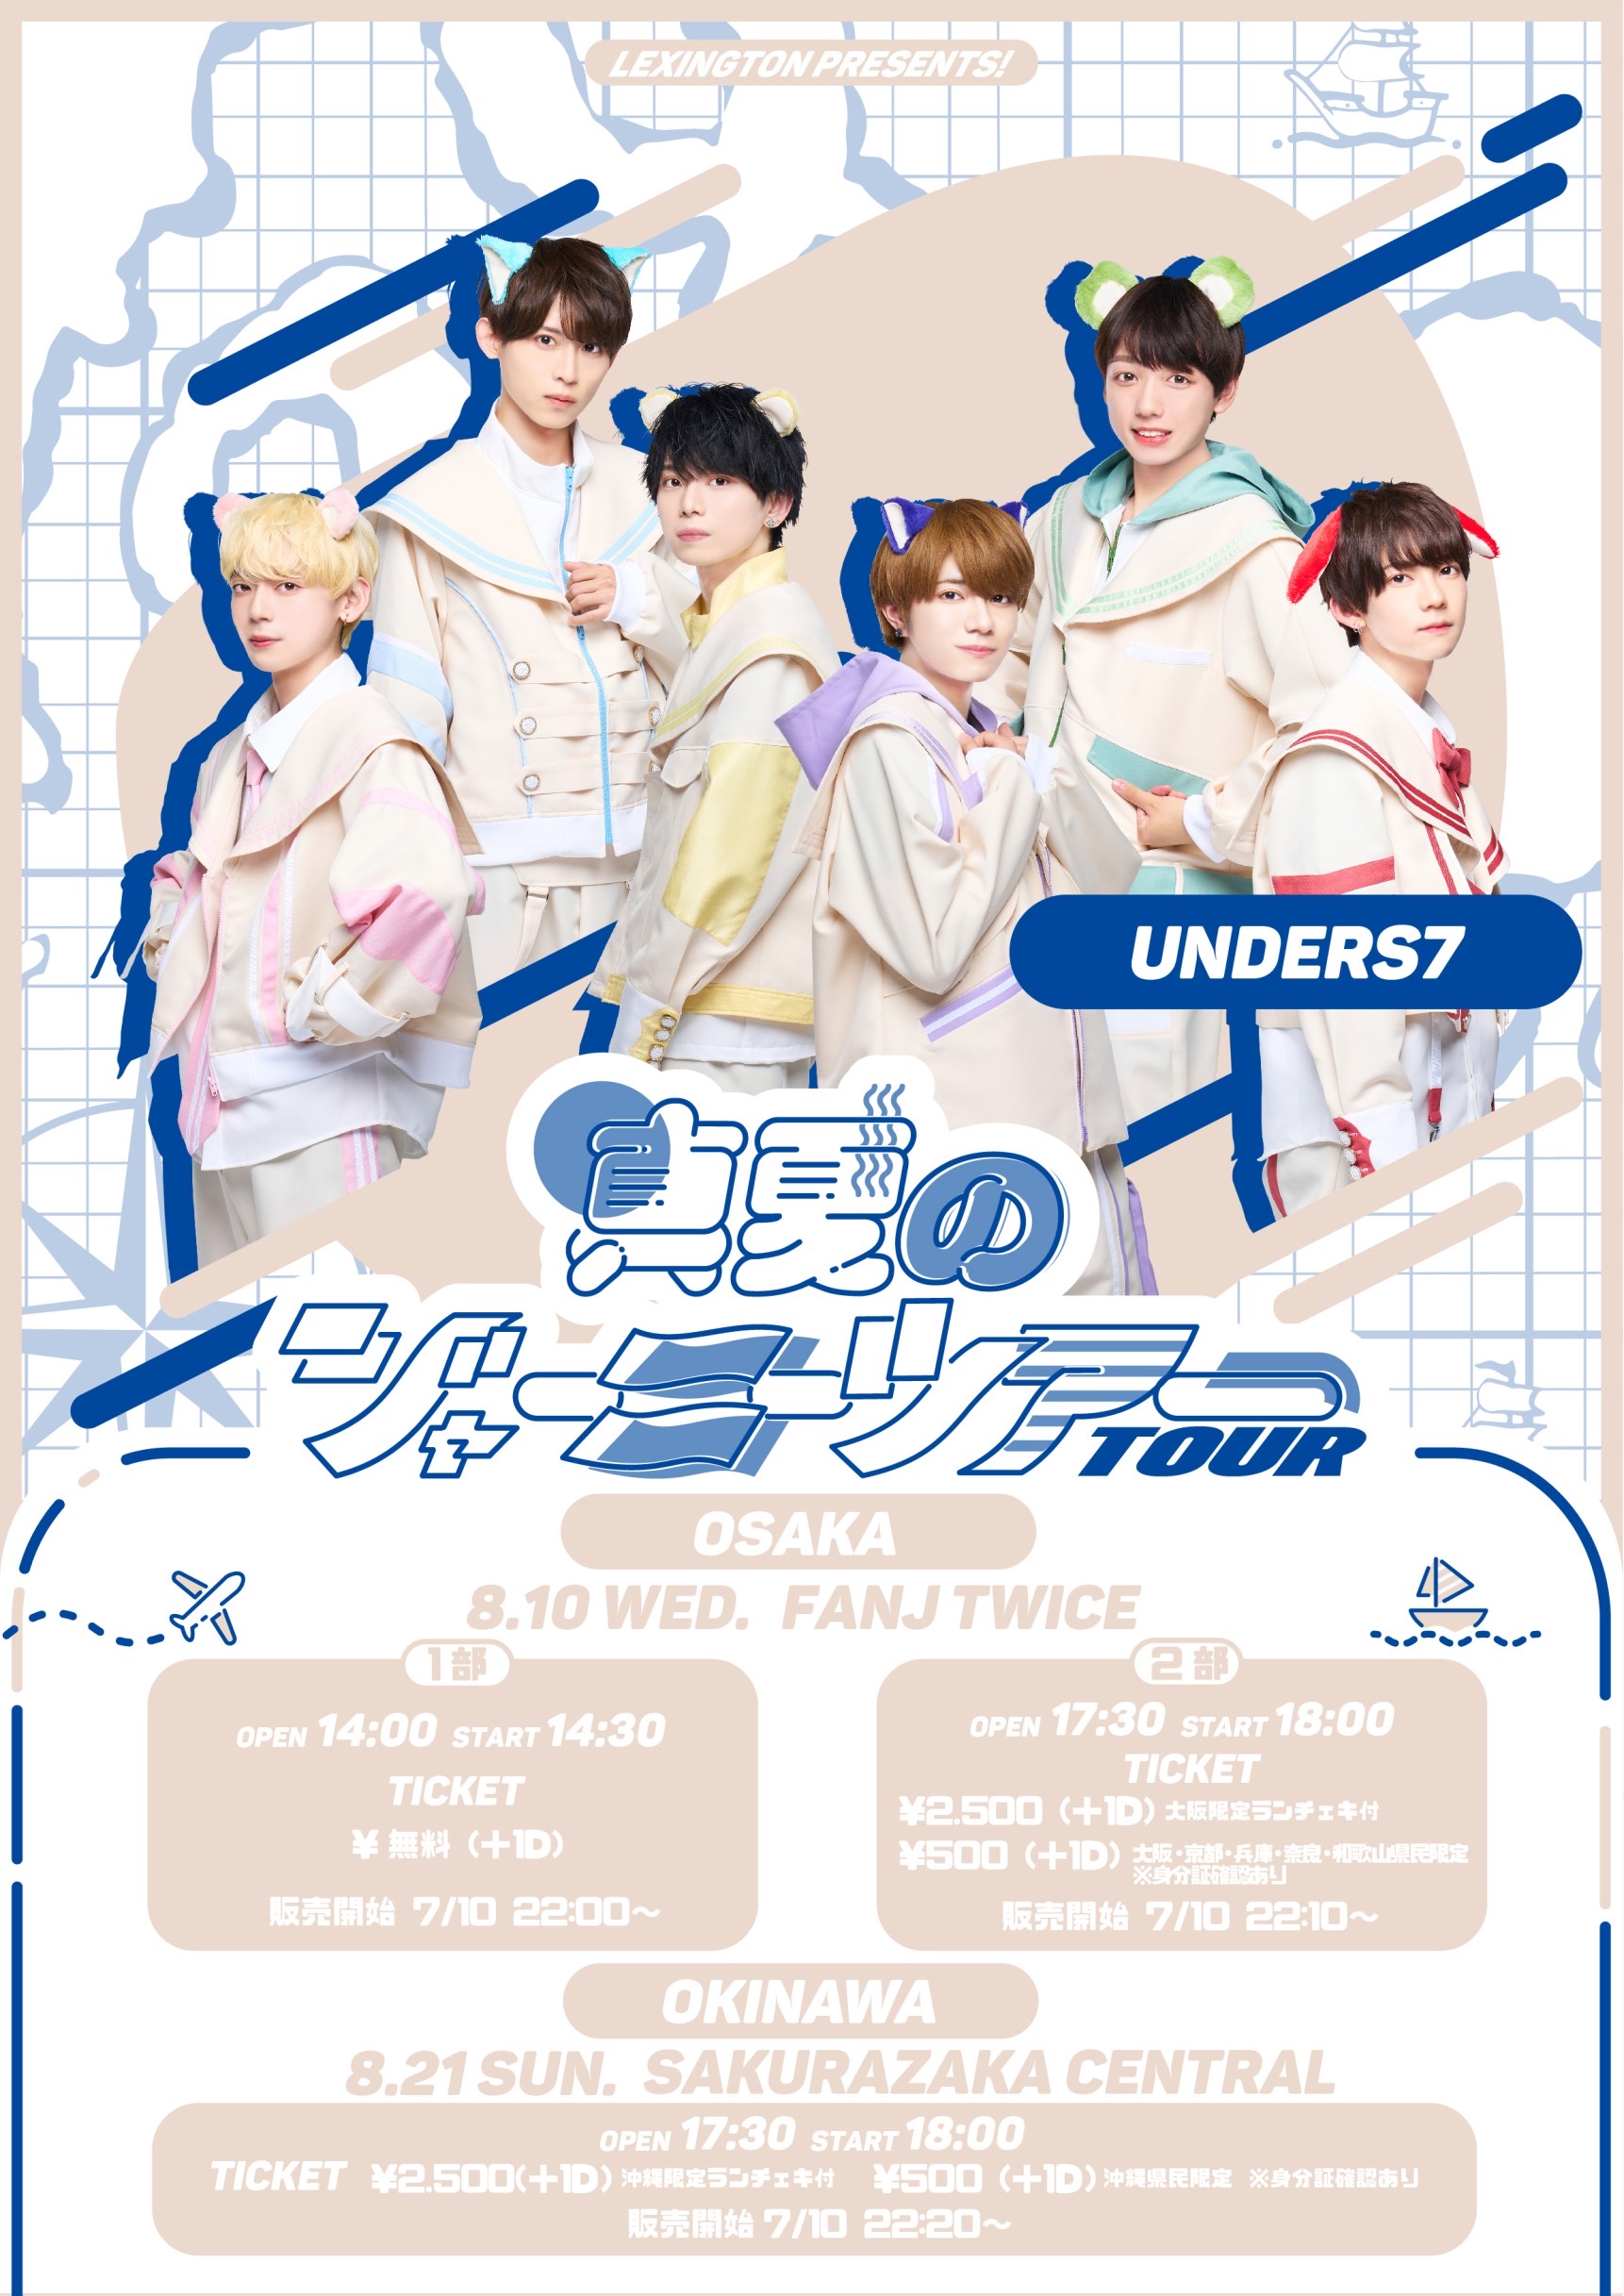 2022"真夏のジャーニーツアー”【FANJ twice(大阪) unders7 2部】